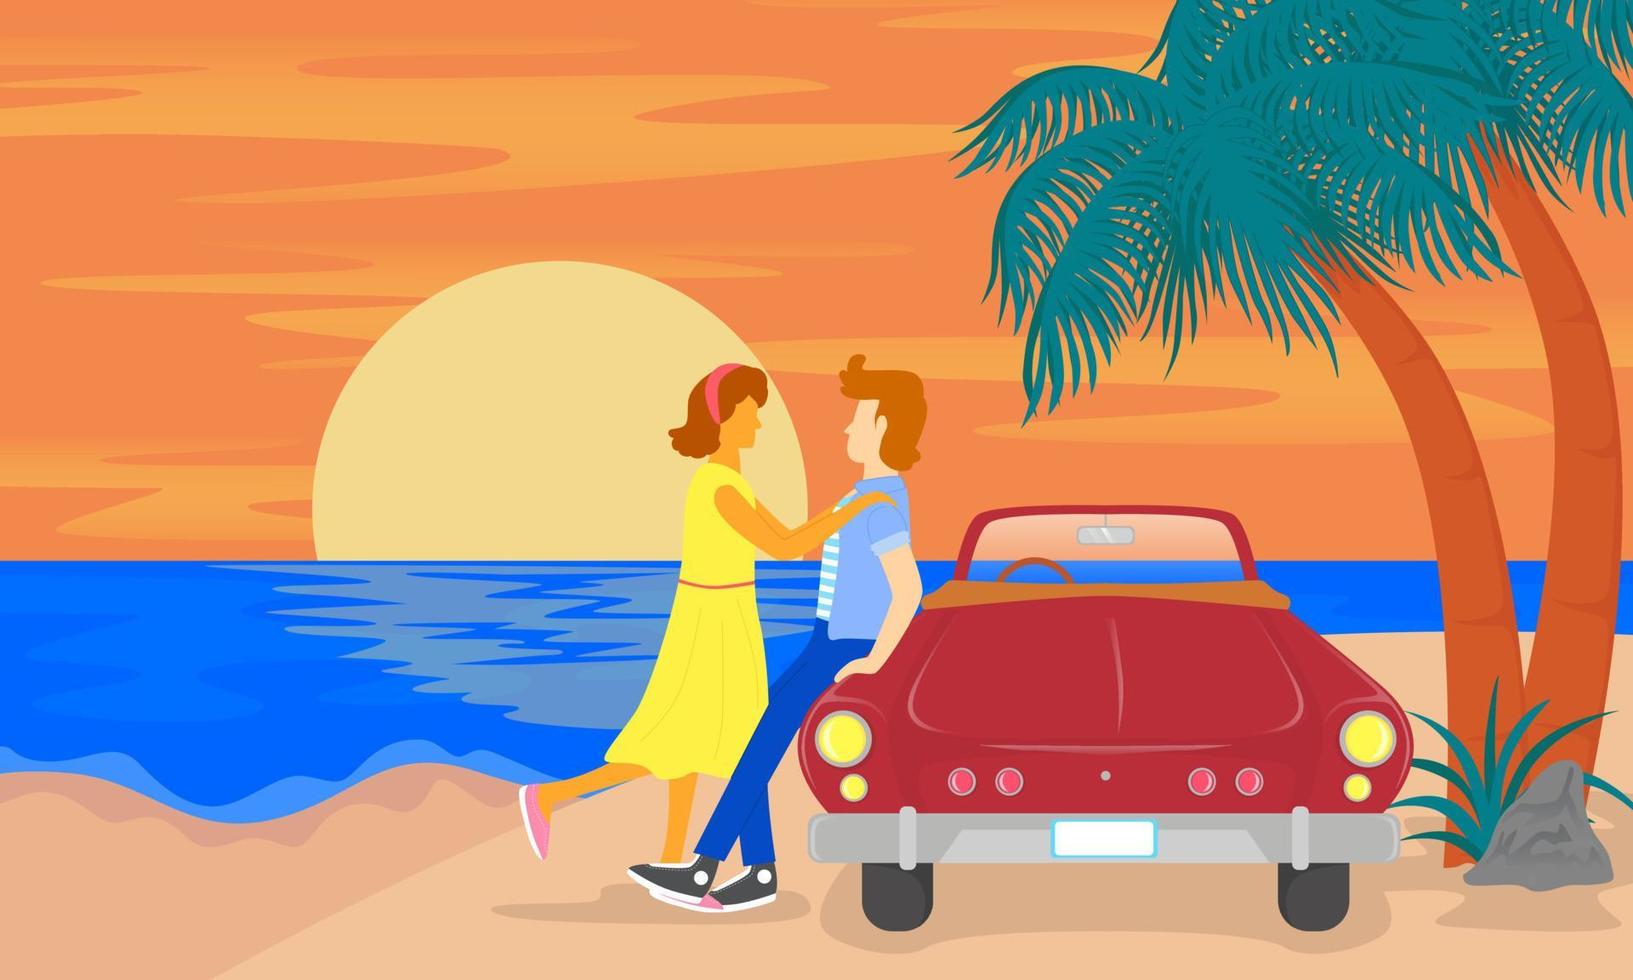 viaje romántico por carretera de los amantes, tema de los 80, papel pintado, sitio web, afiche, impresión, aplicación móvil vector